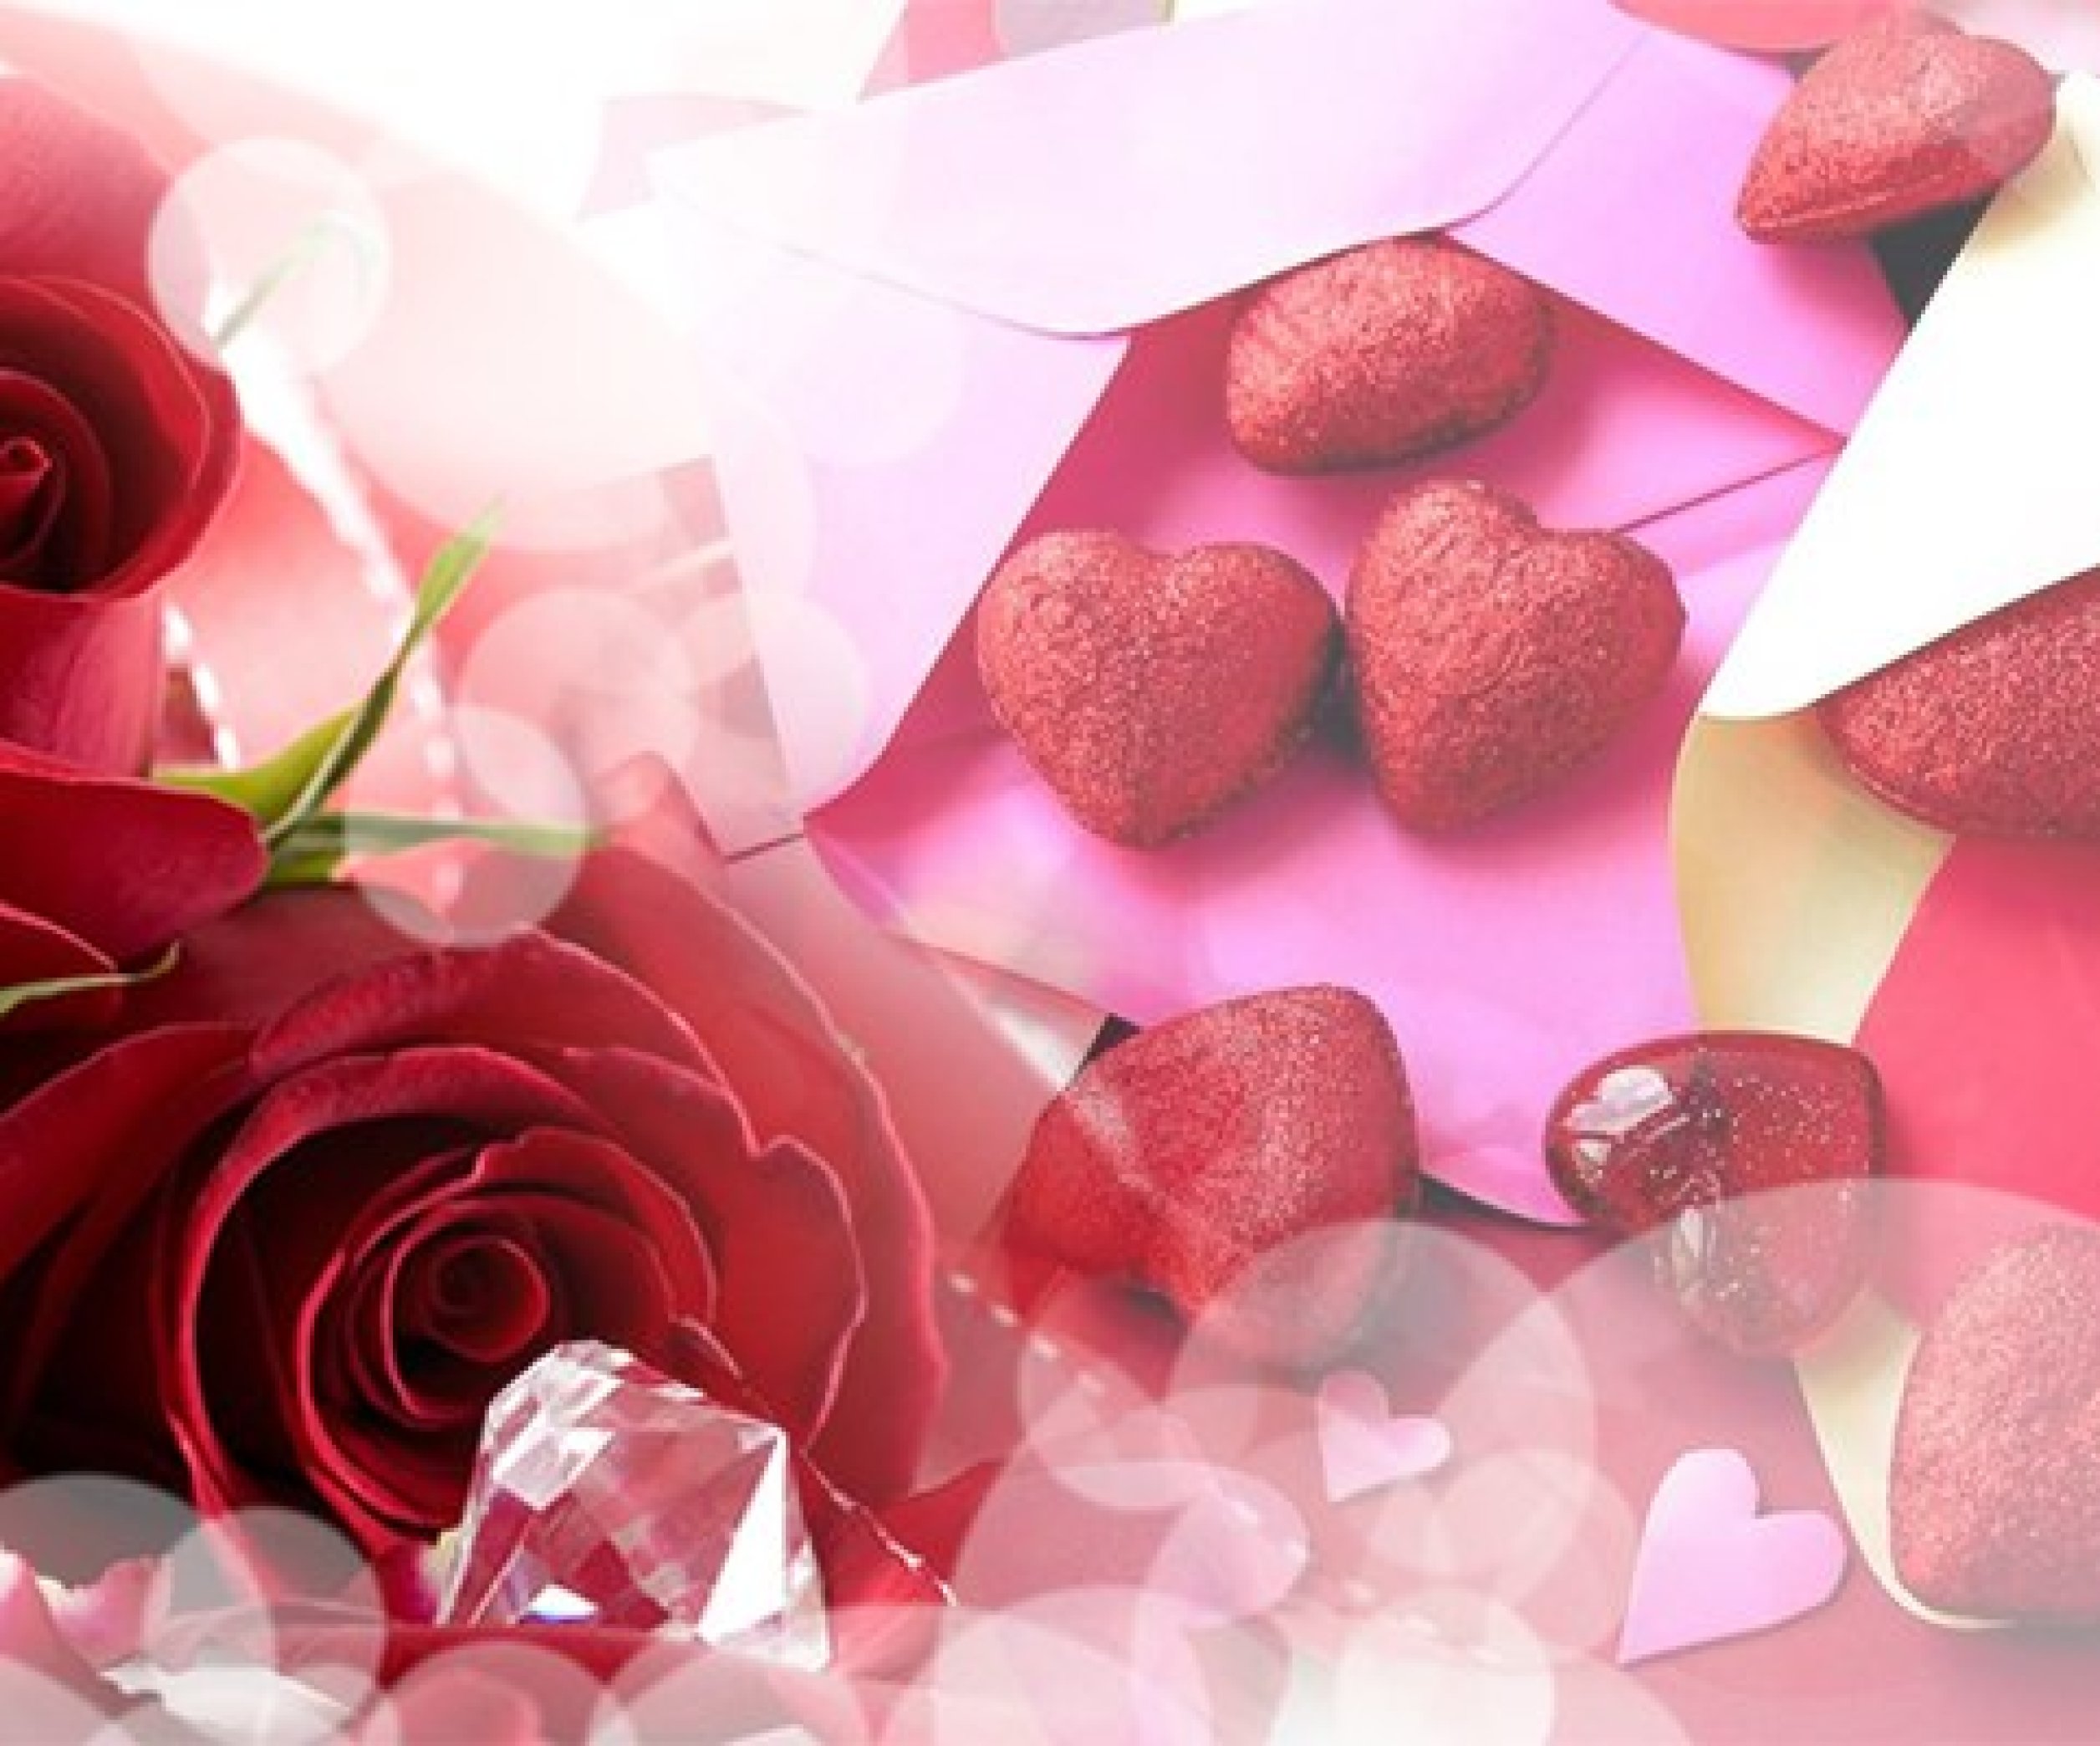 ТОП-10 идей подарков на 14 февраля. Что подарить на День святого Валентина?